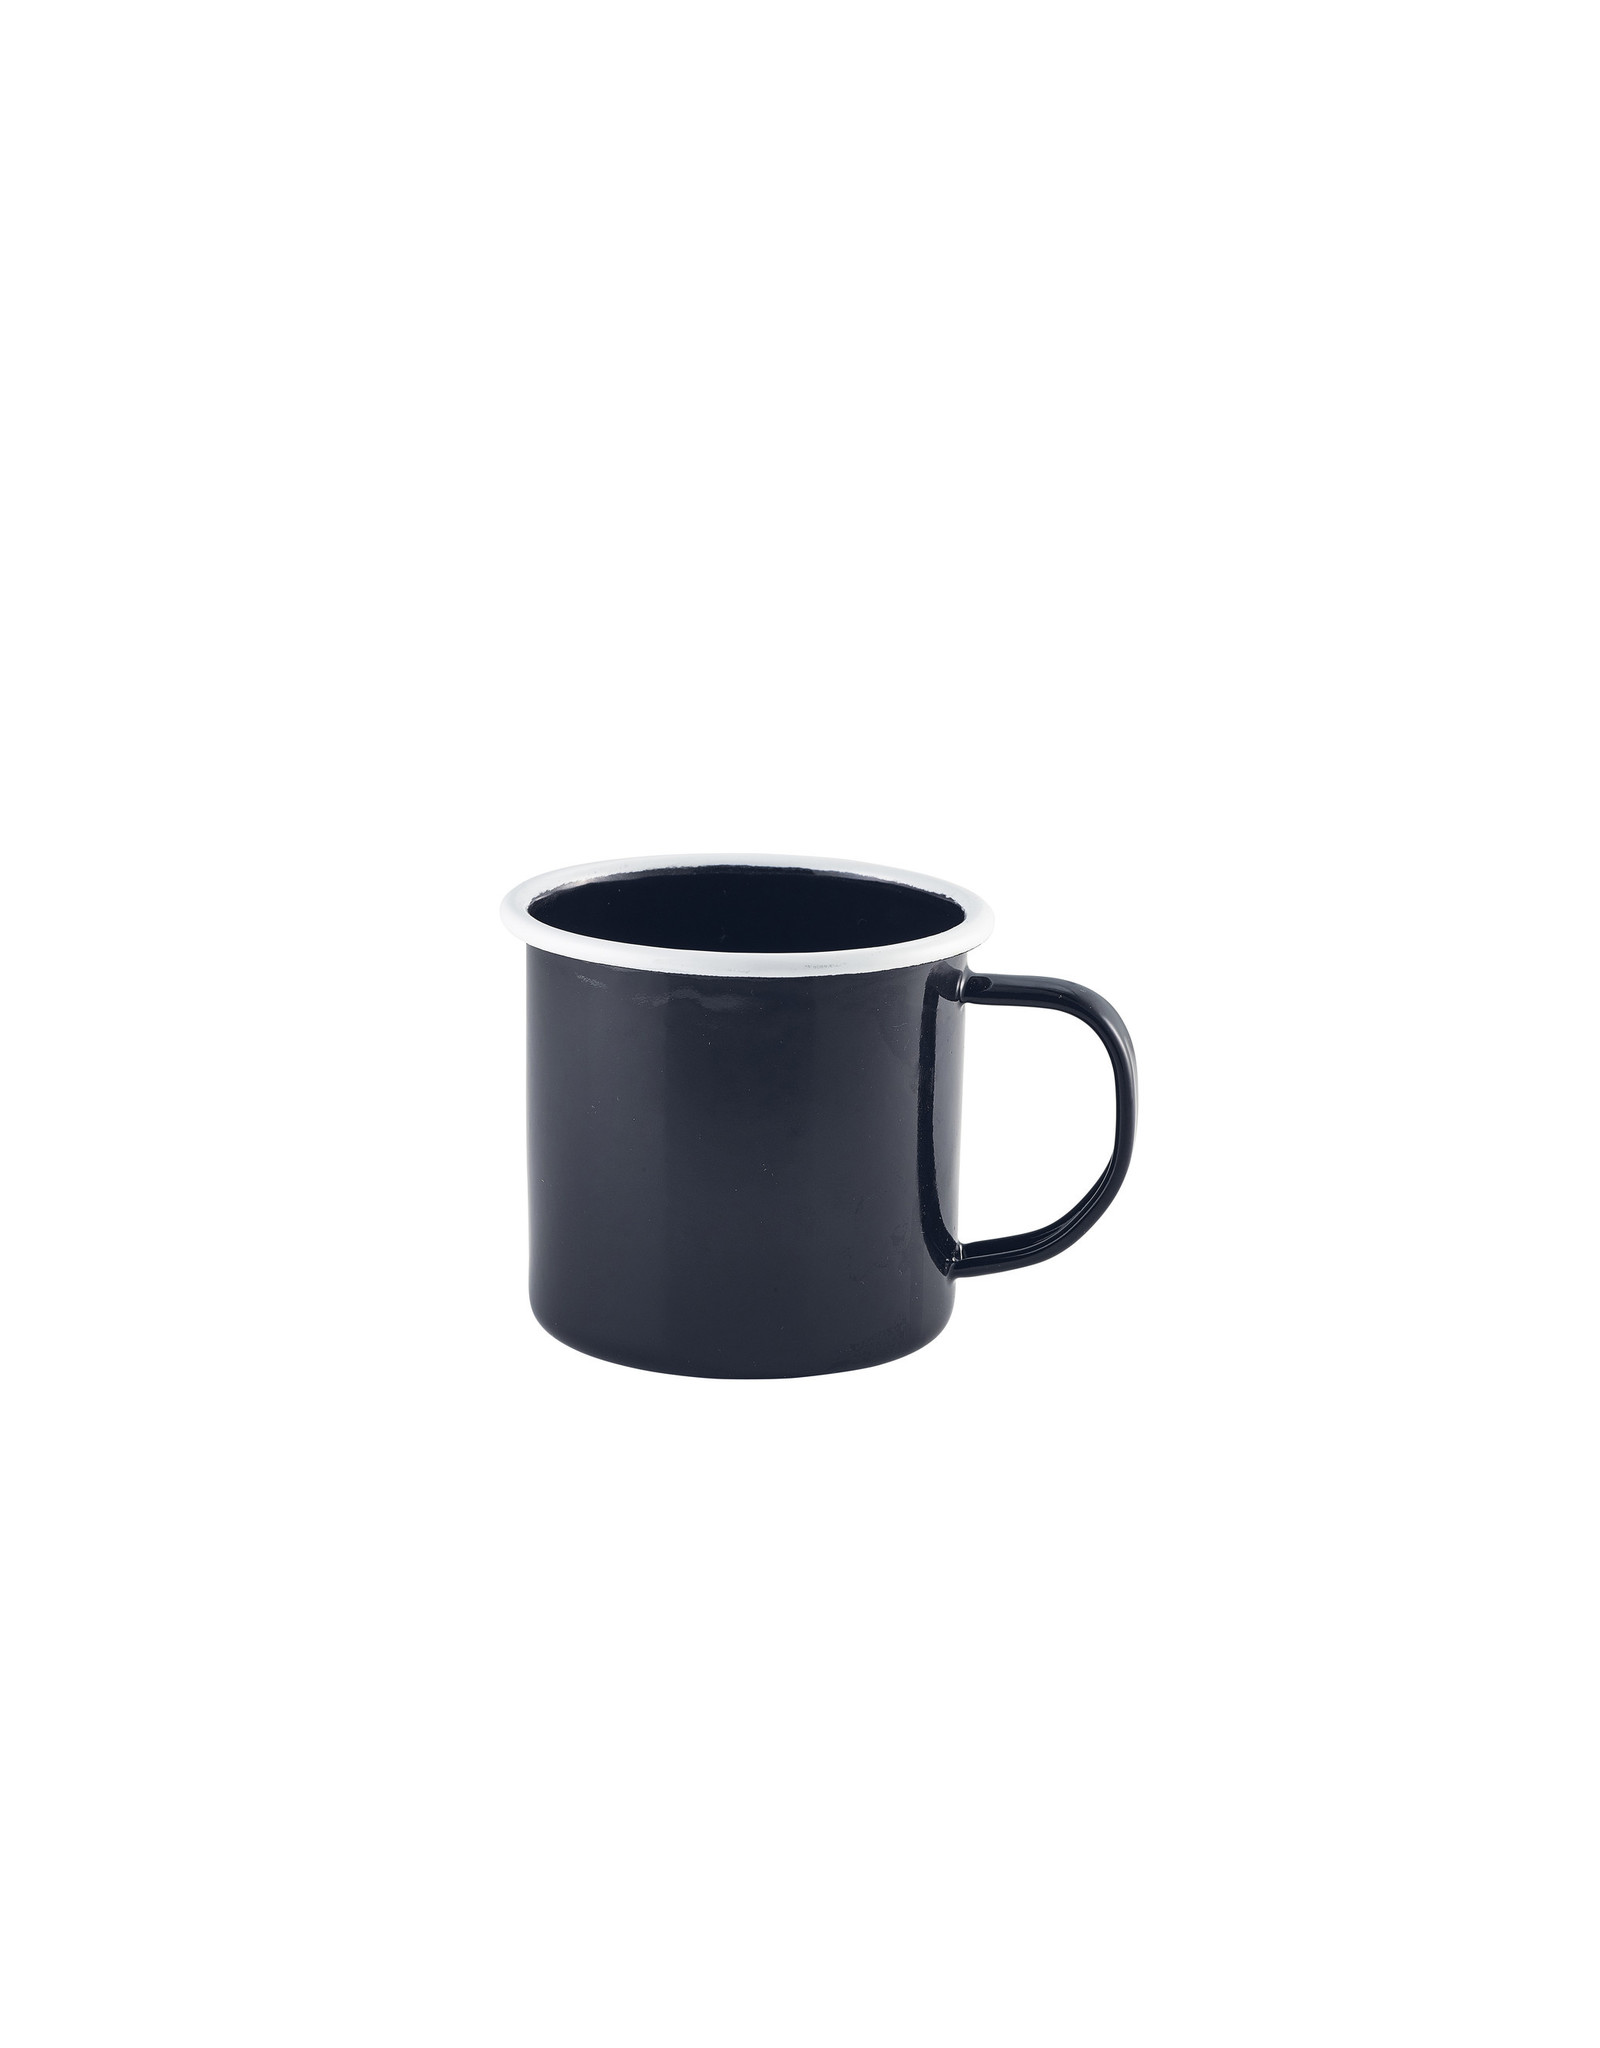 Stylepoint Enamel mug black/white 360 ml